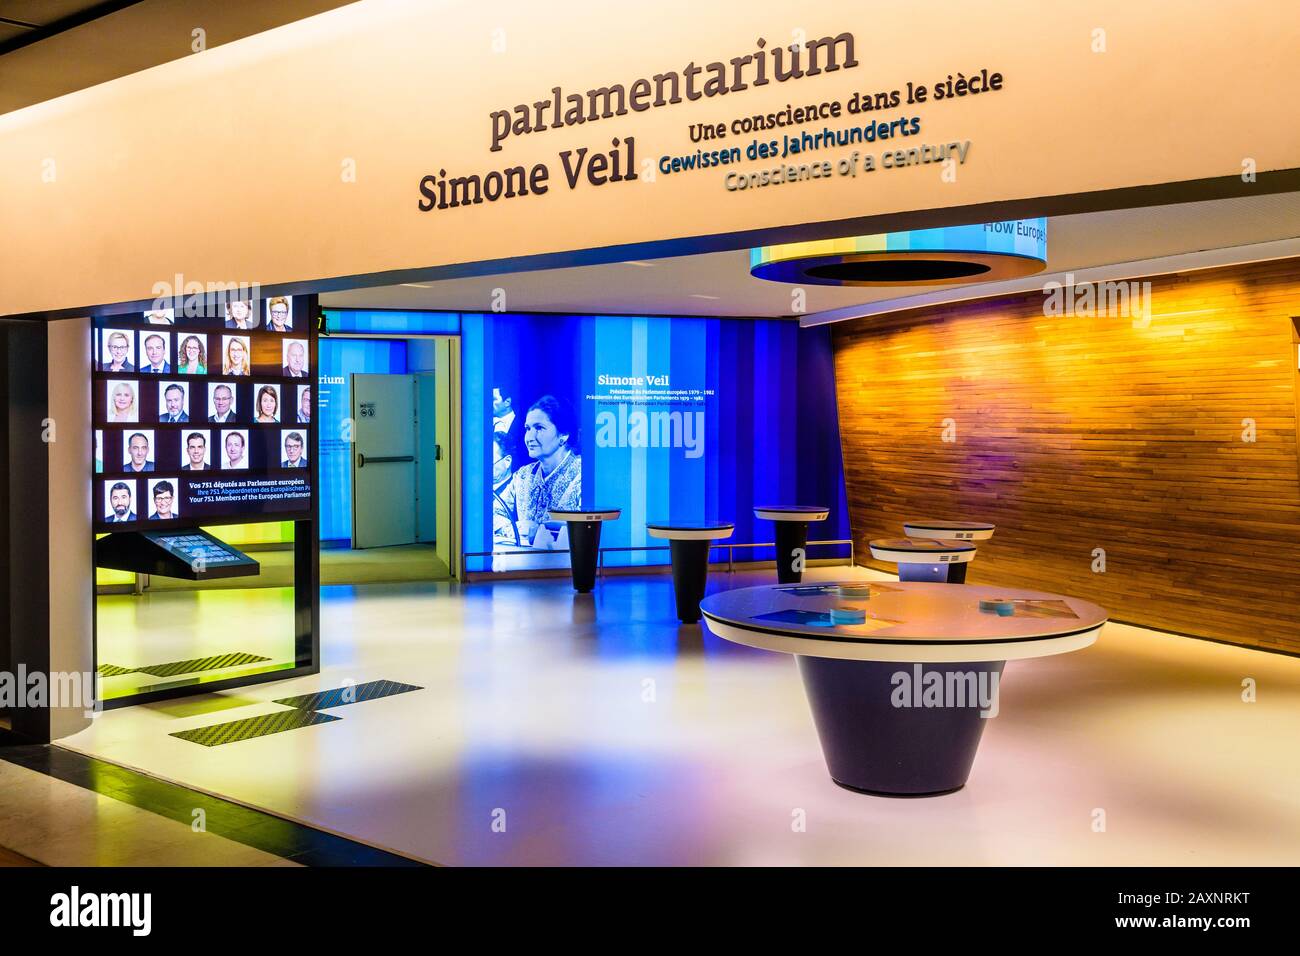 El Simone Veil parlamentarium es un espacio educativo interactivo en el edificio Louise Weiss, sede del Parlamento Europeo en Estrasburgo, Francia Foto de stock